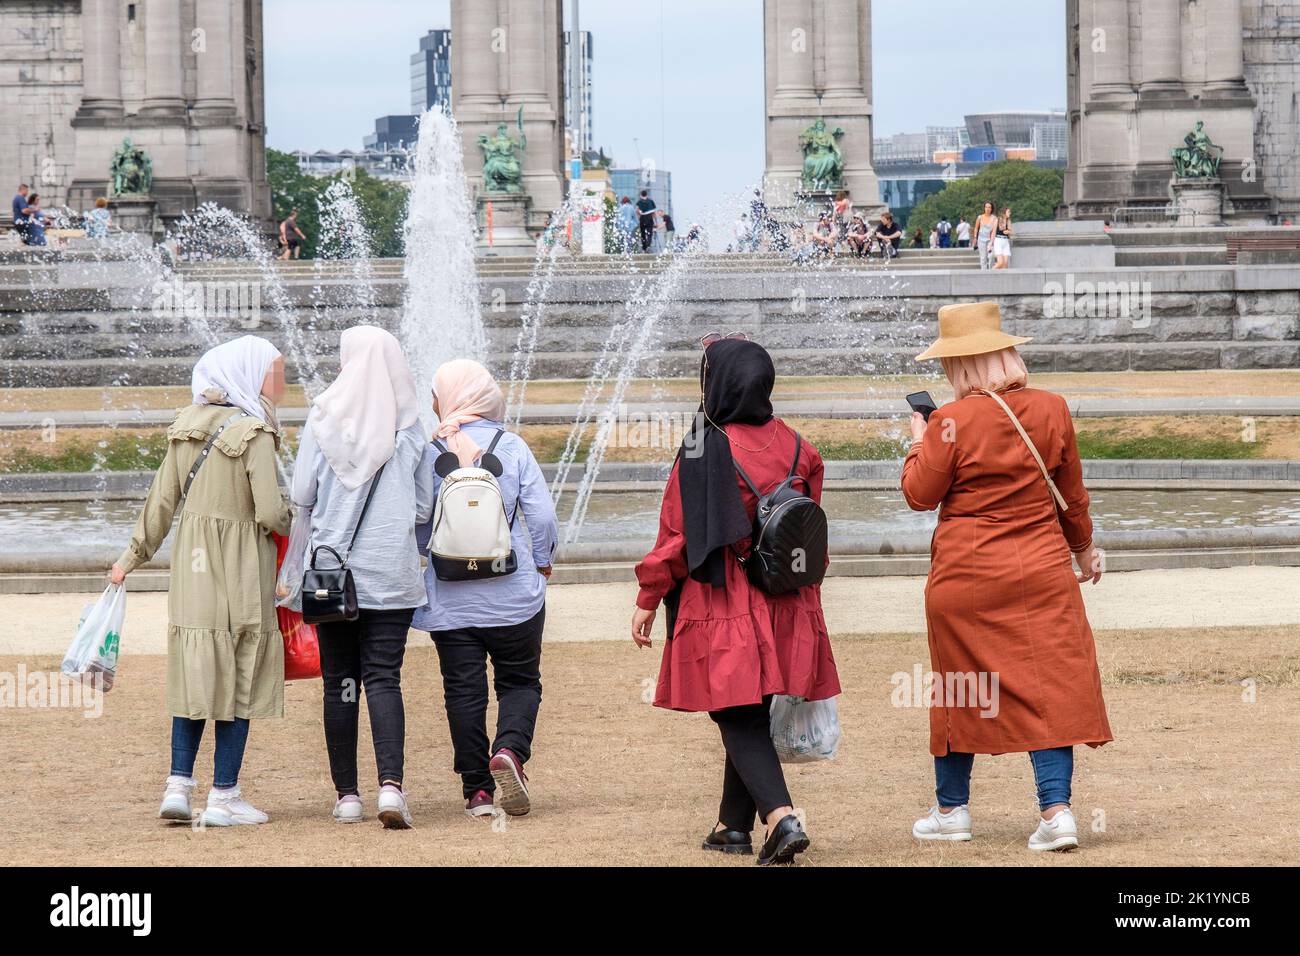 Gruppo di donne del medio Oriente o del golfo persiano che fanno turismo in Europa | Groupe de femme du moyen-orient ou du golfe persique en tourisme en Europe Foto Stock